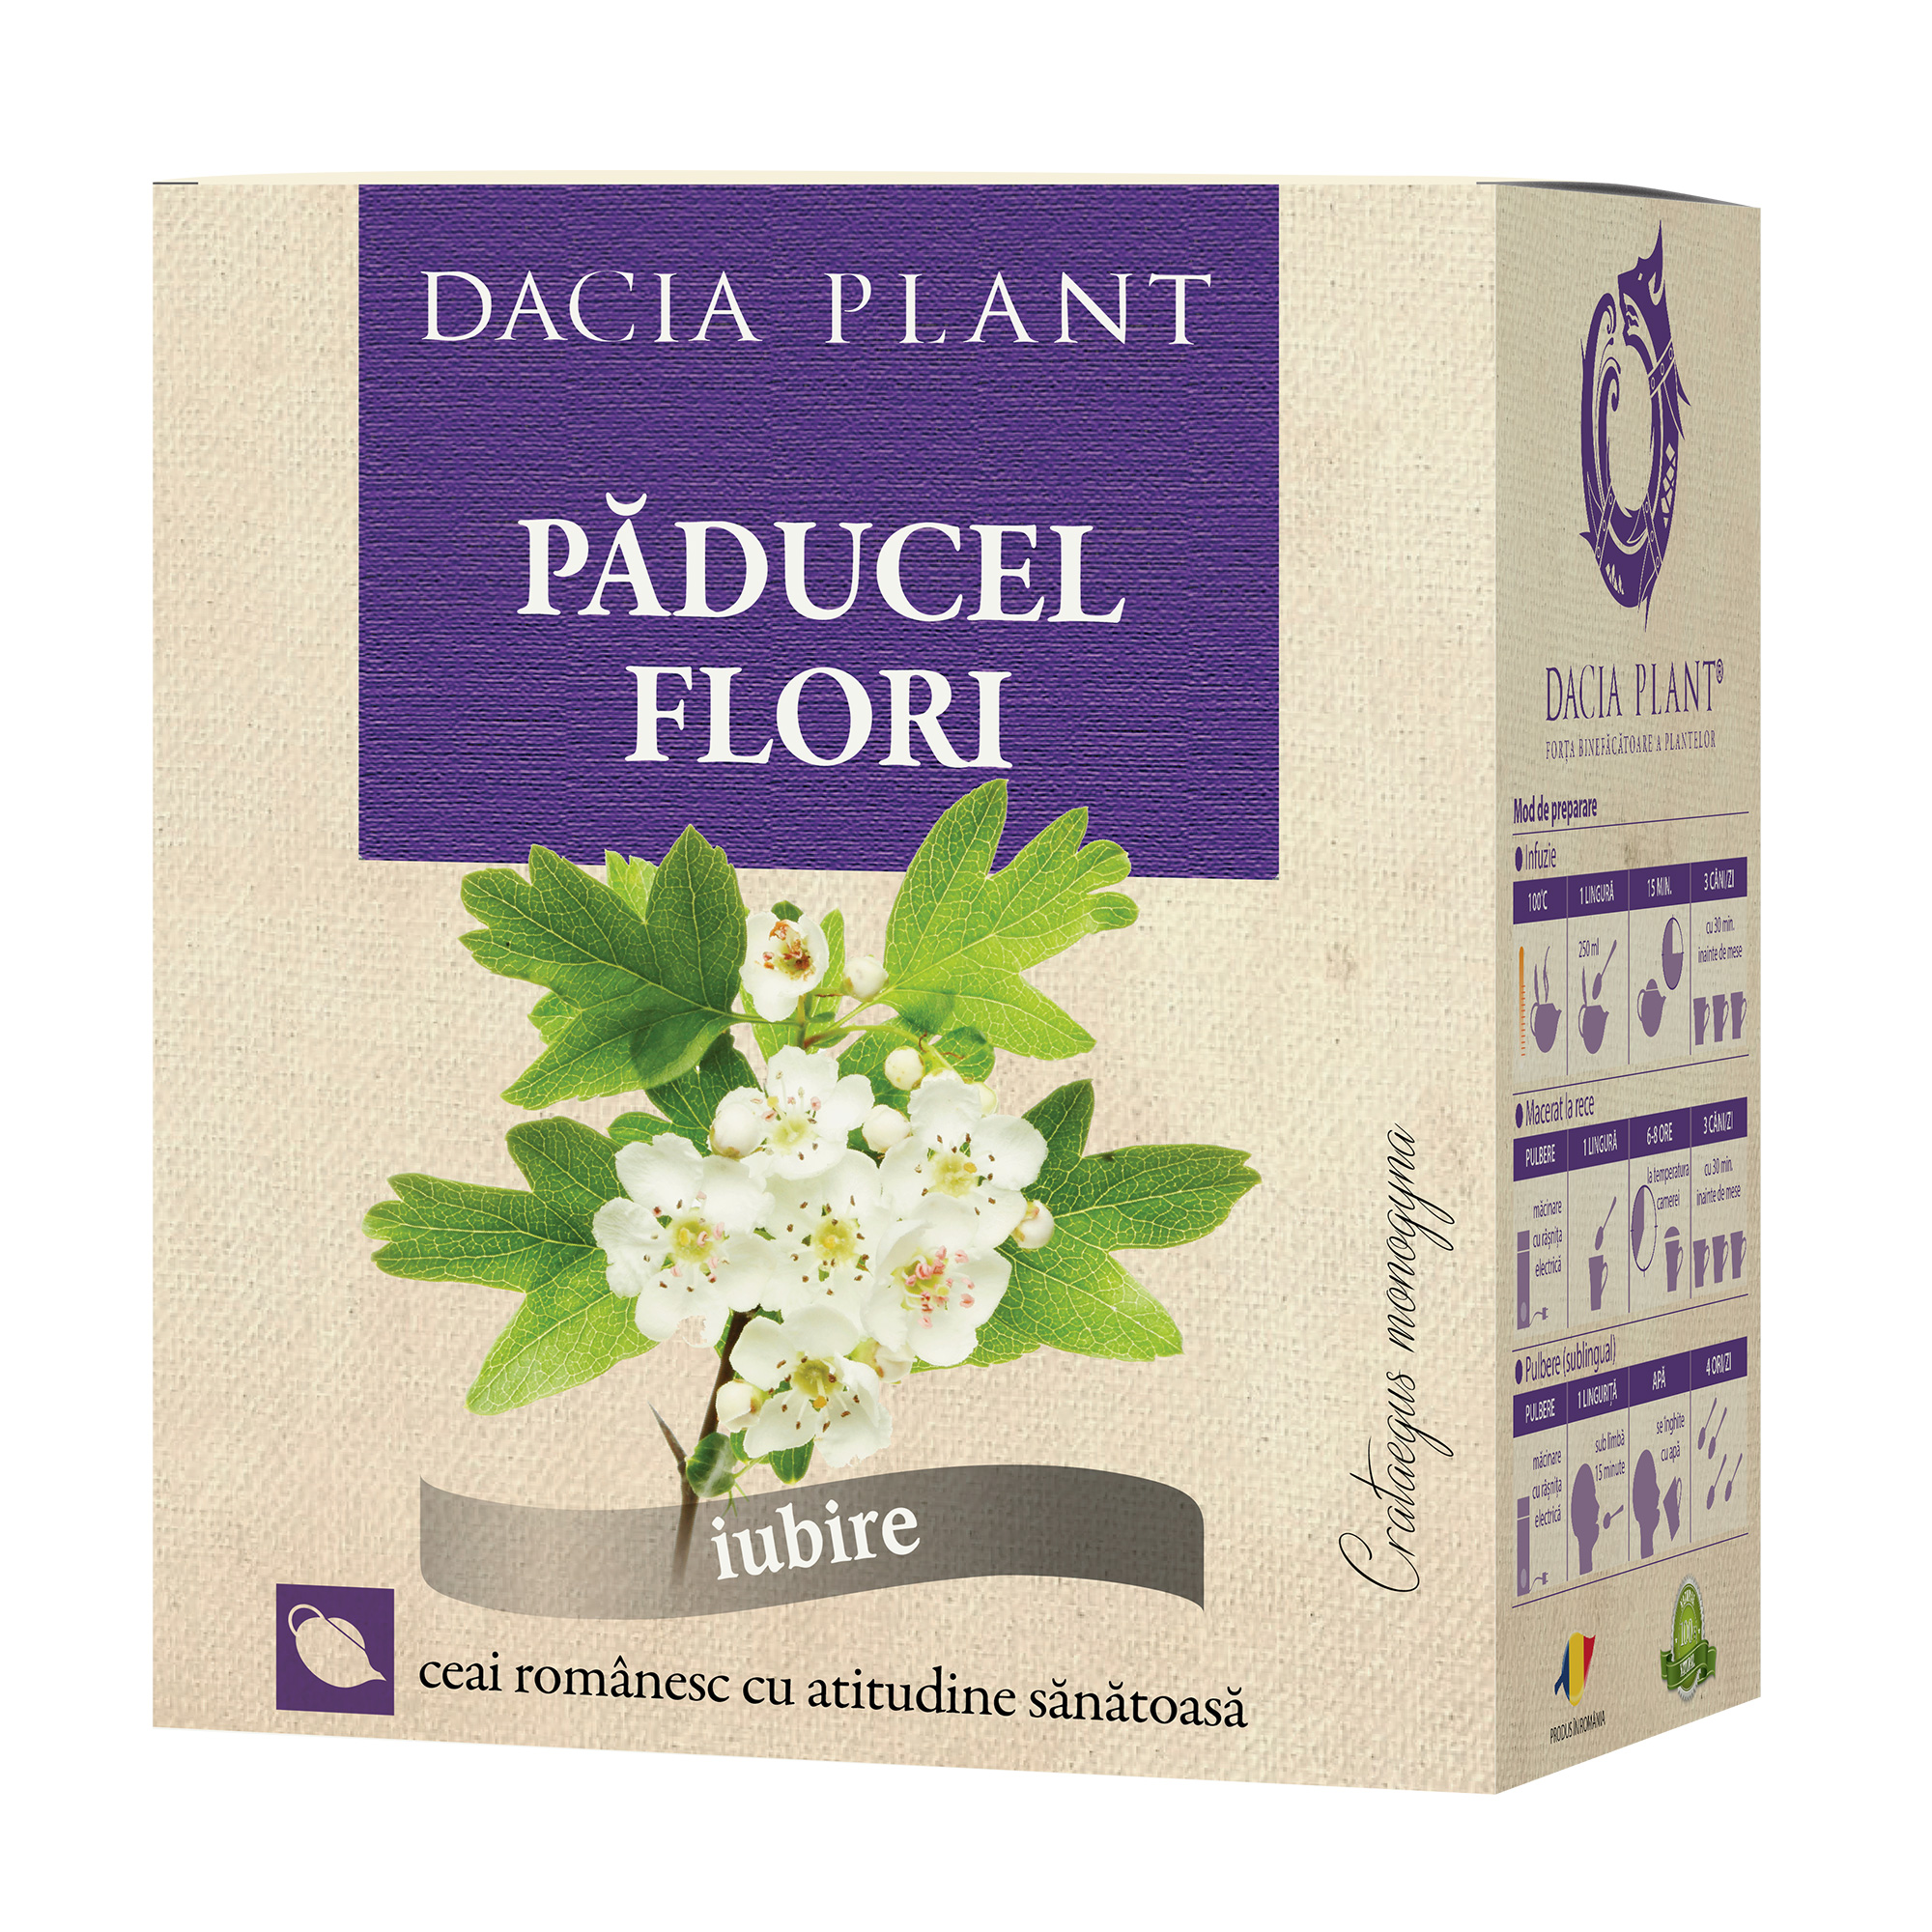 Ceai de Paducel flori Dacia Plant